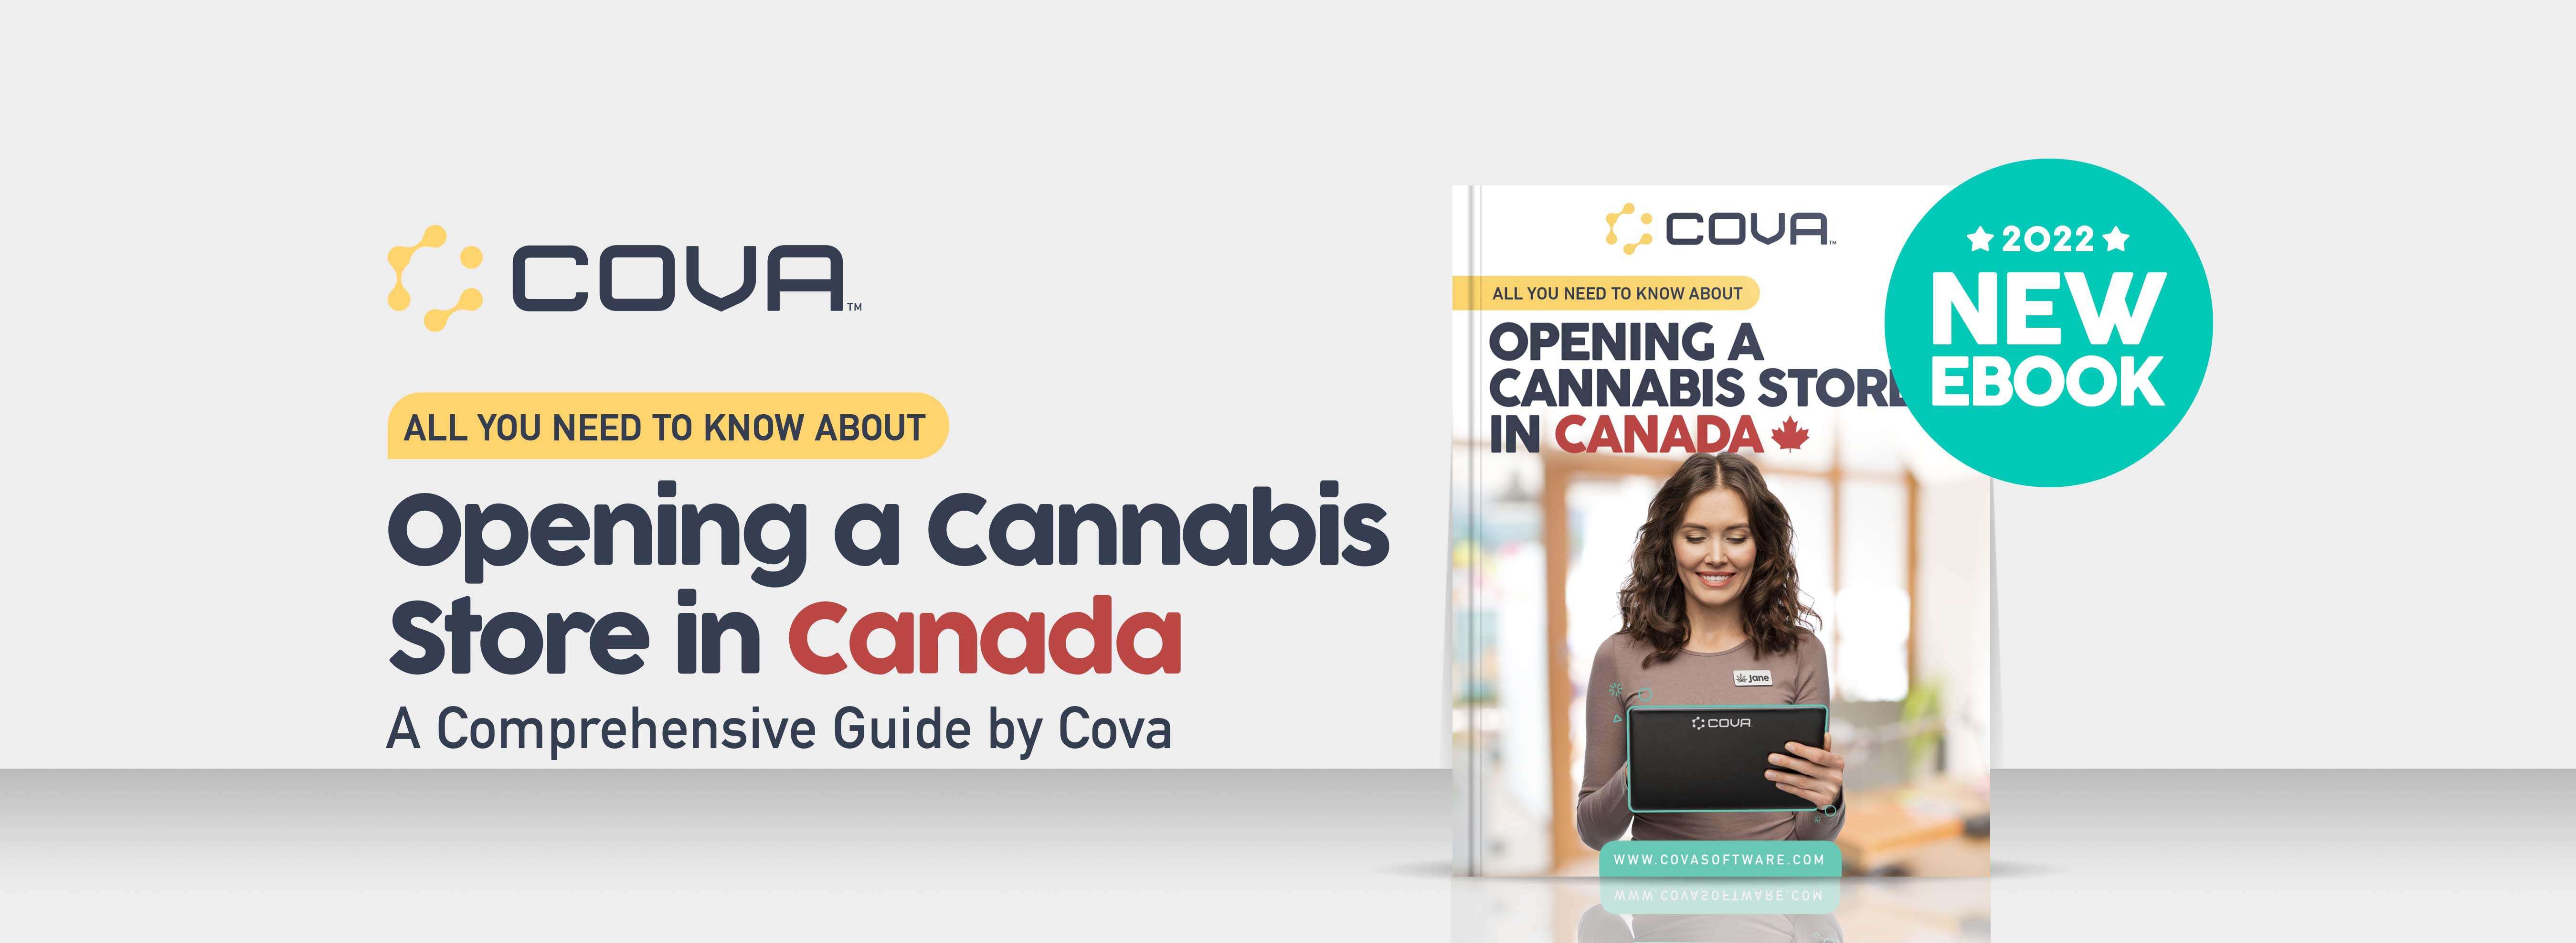 Cova-Canada-Ebook-2022-Landing-Page-Banner